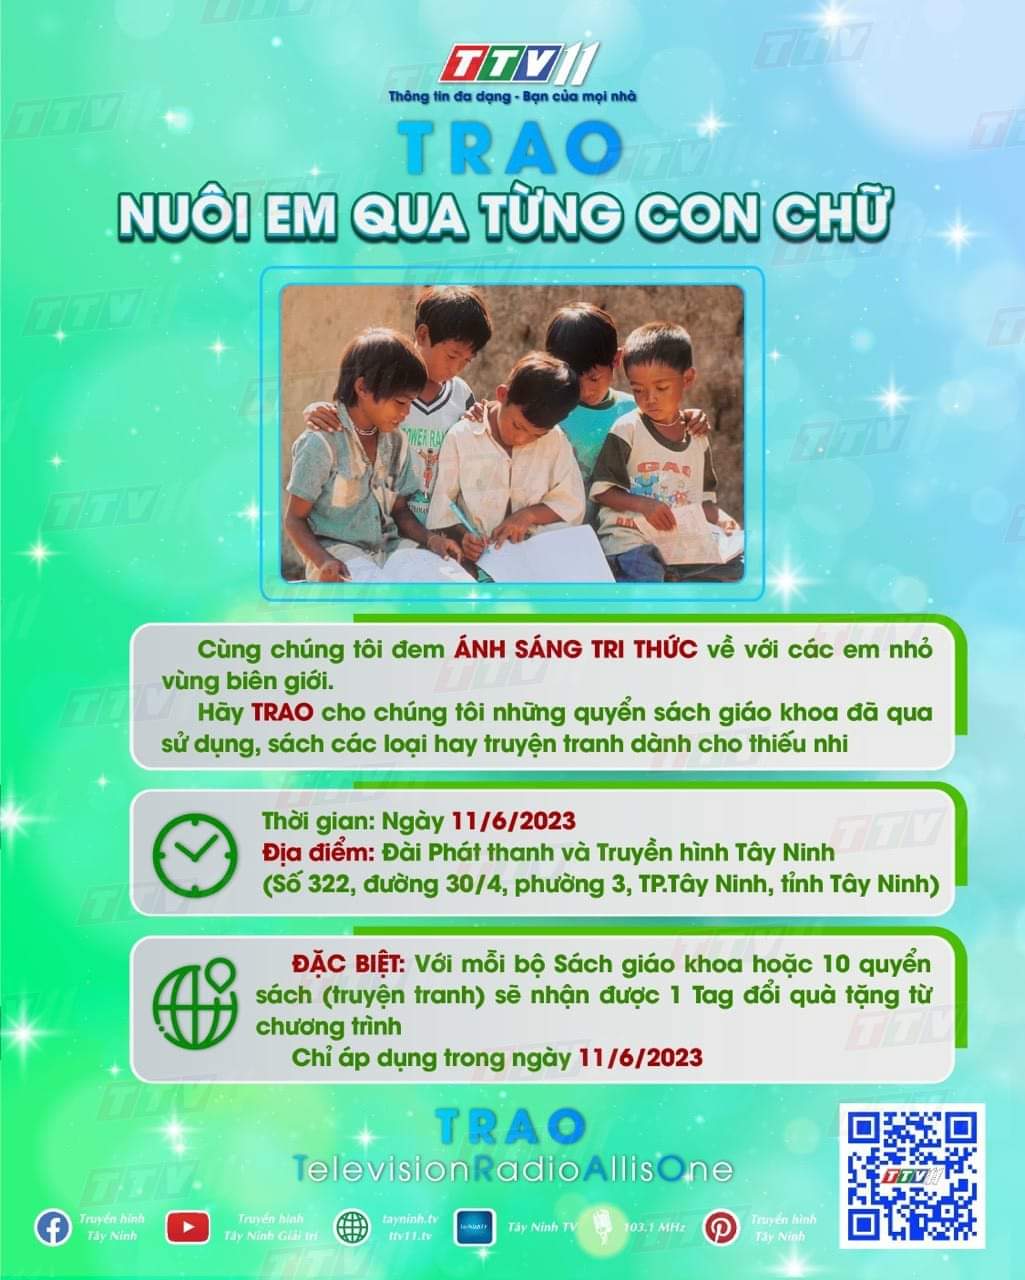 📺 Chương trình TRAO do Đài Phát thanh – Truyền hình Tây Ninh tổ chức lần đầu tiên, và ngày hội TRAO sách – NHẬN quà sẽ diễn ra duy nhất vào ngày 11/6/2023.